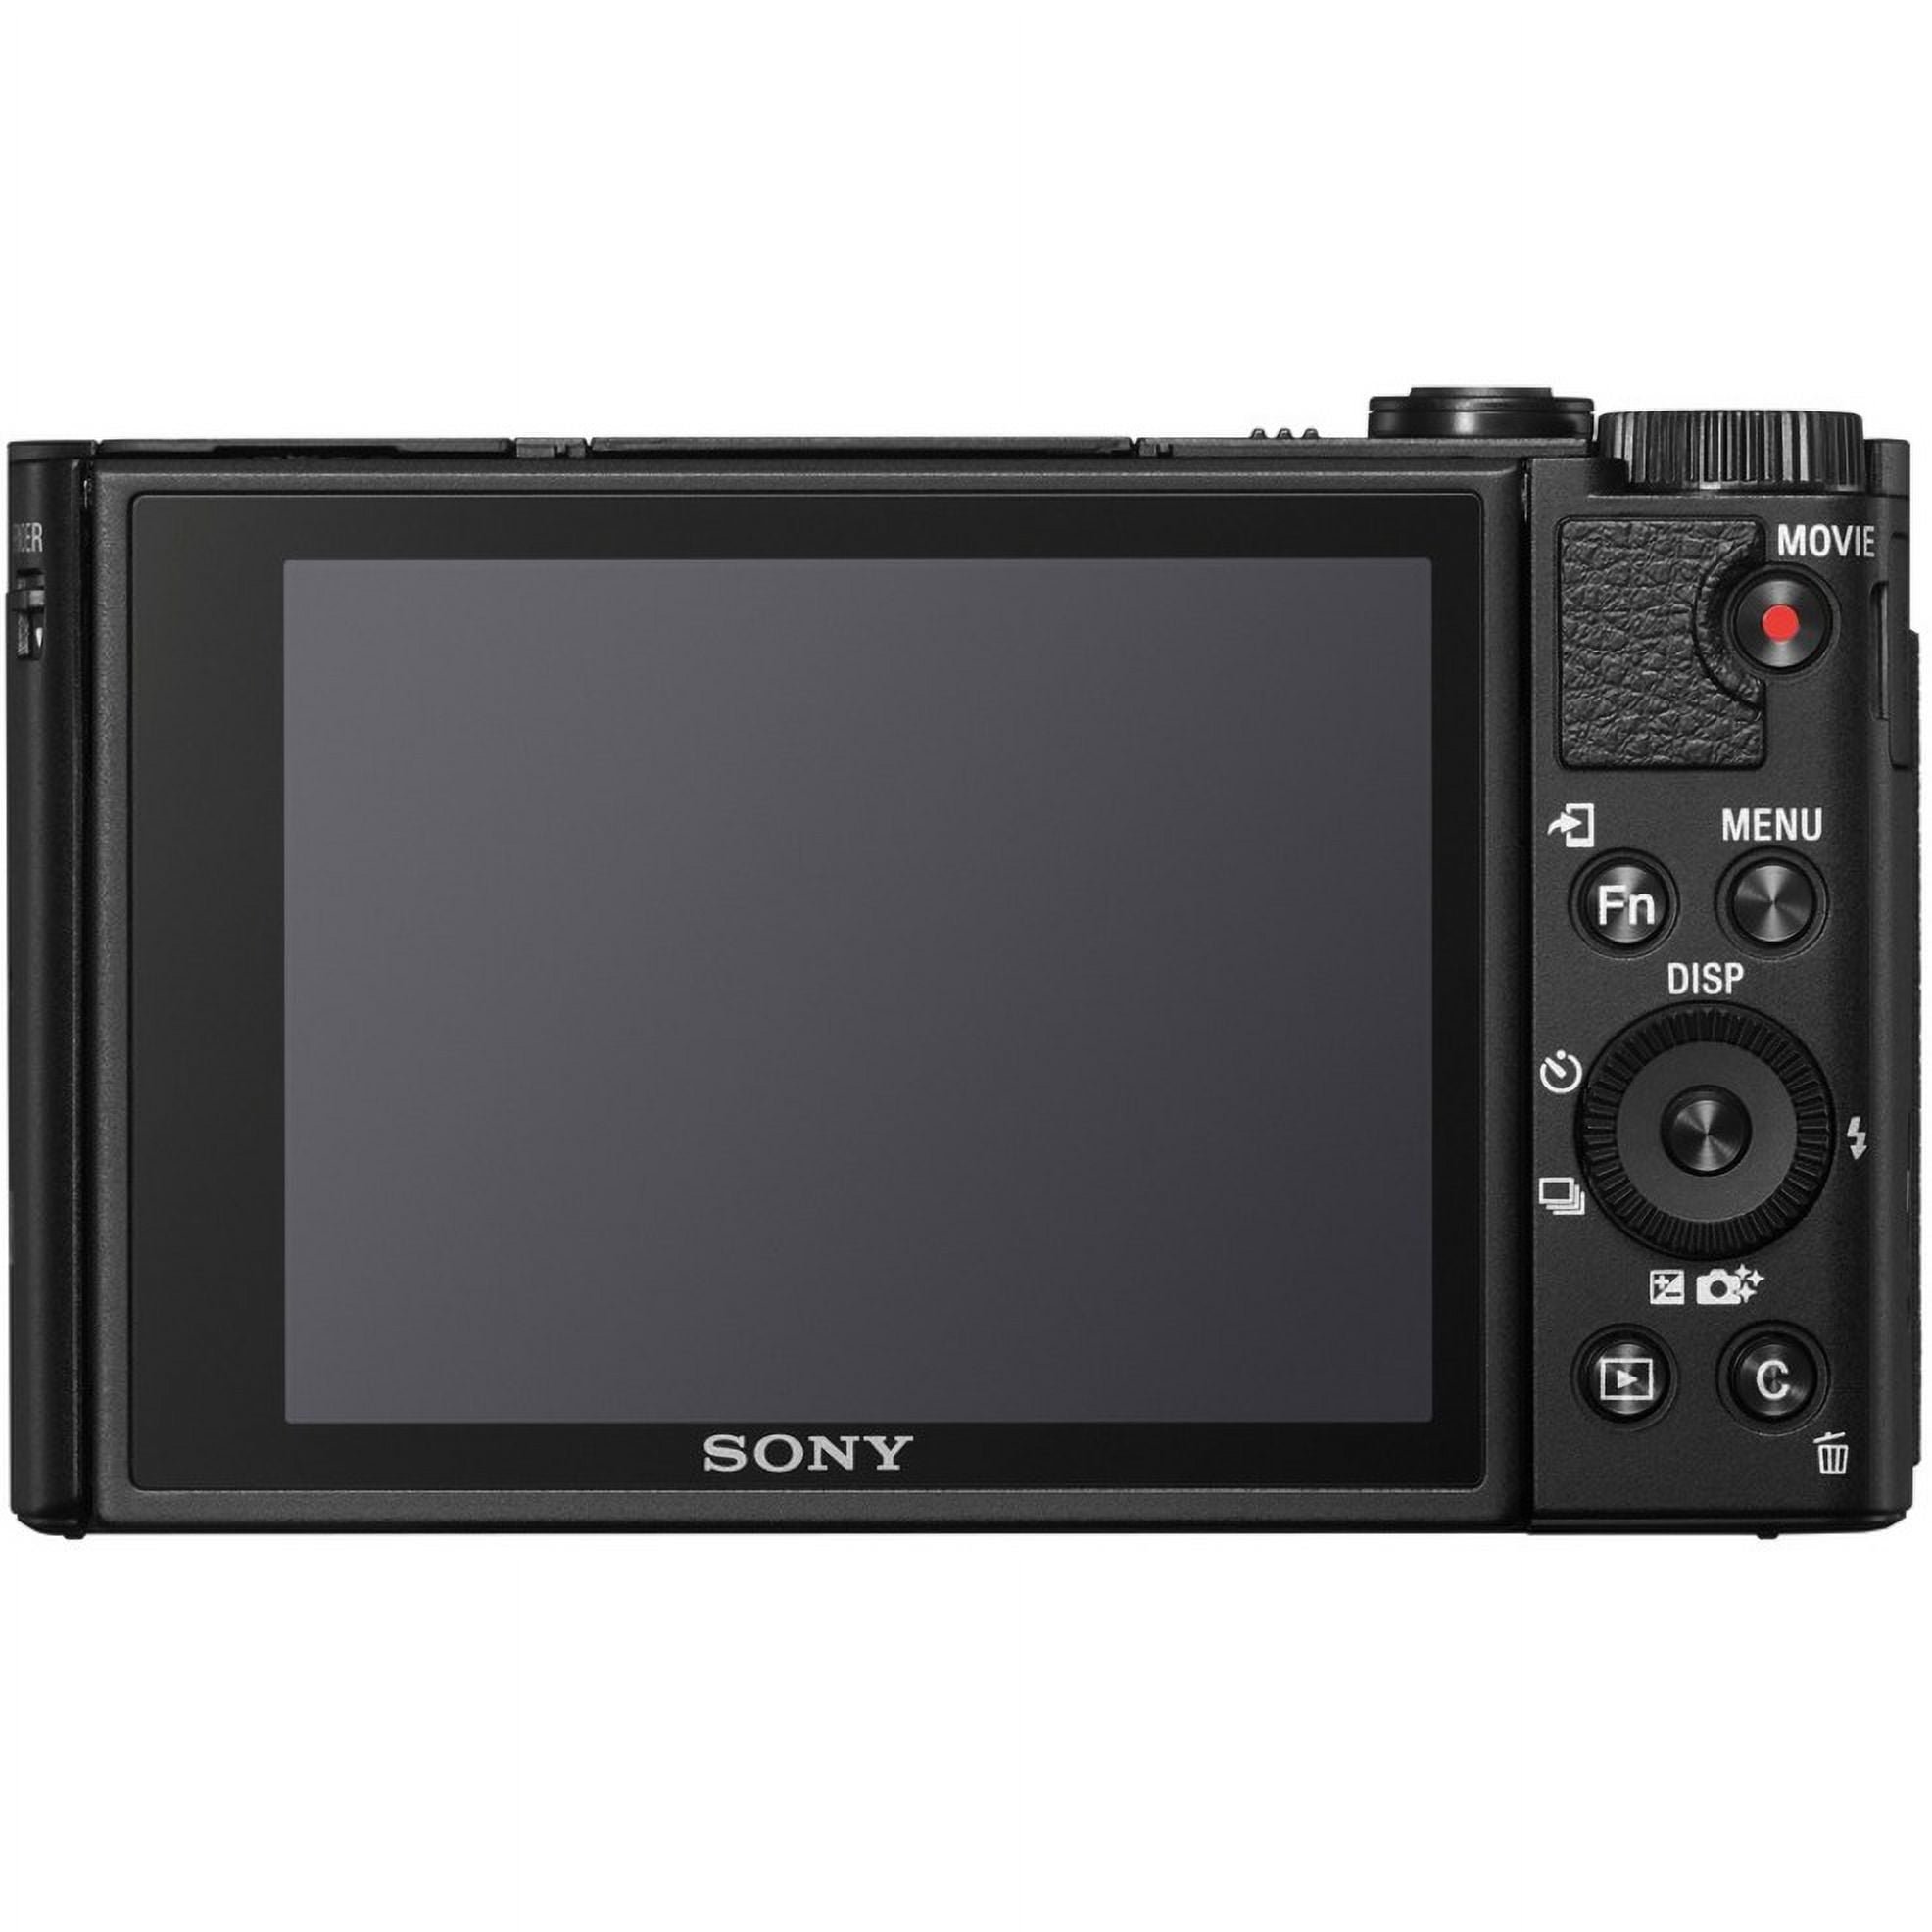 Sony DSC HX .2 Megapixel Compact Camera, Black   Walmart.com